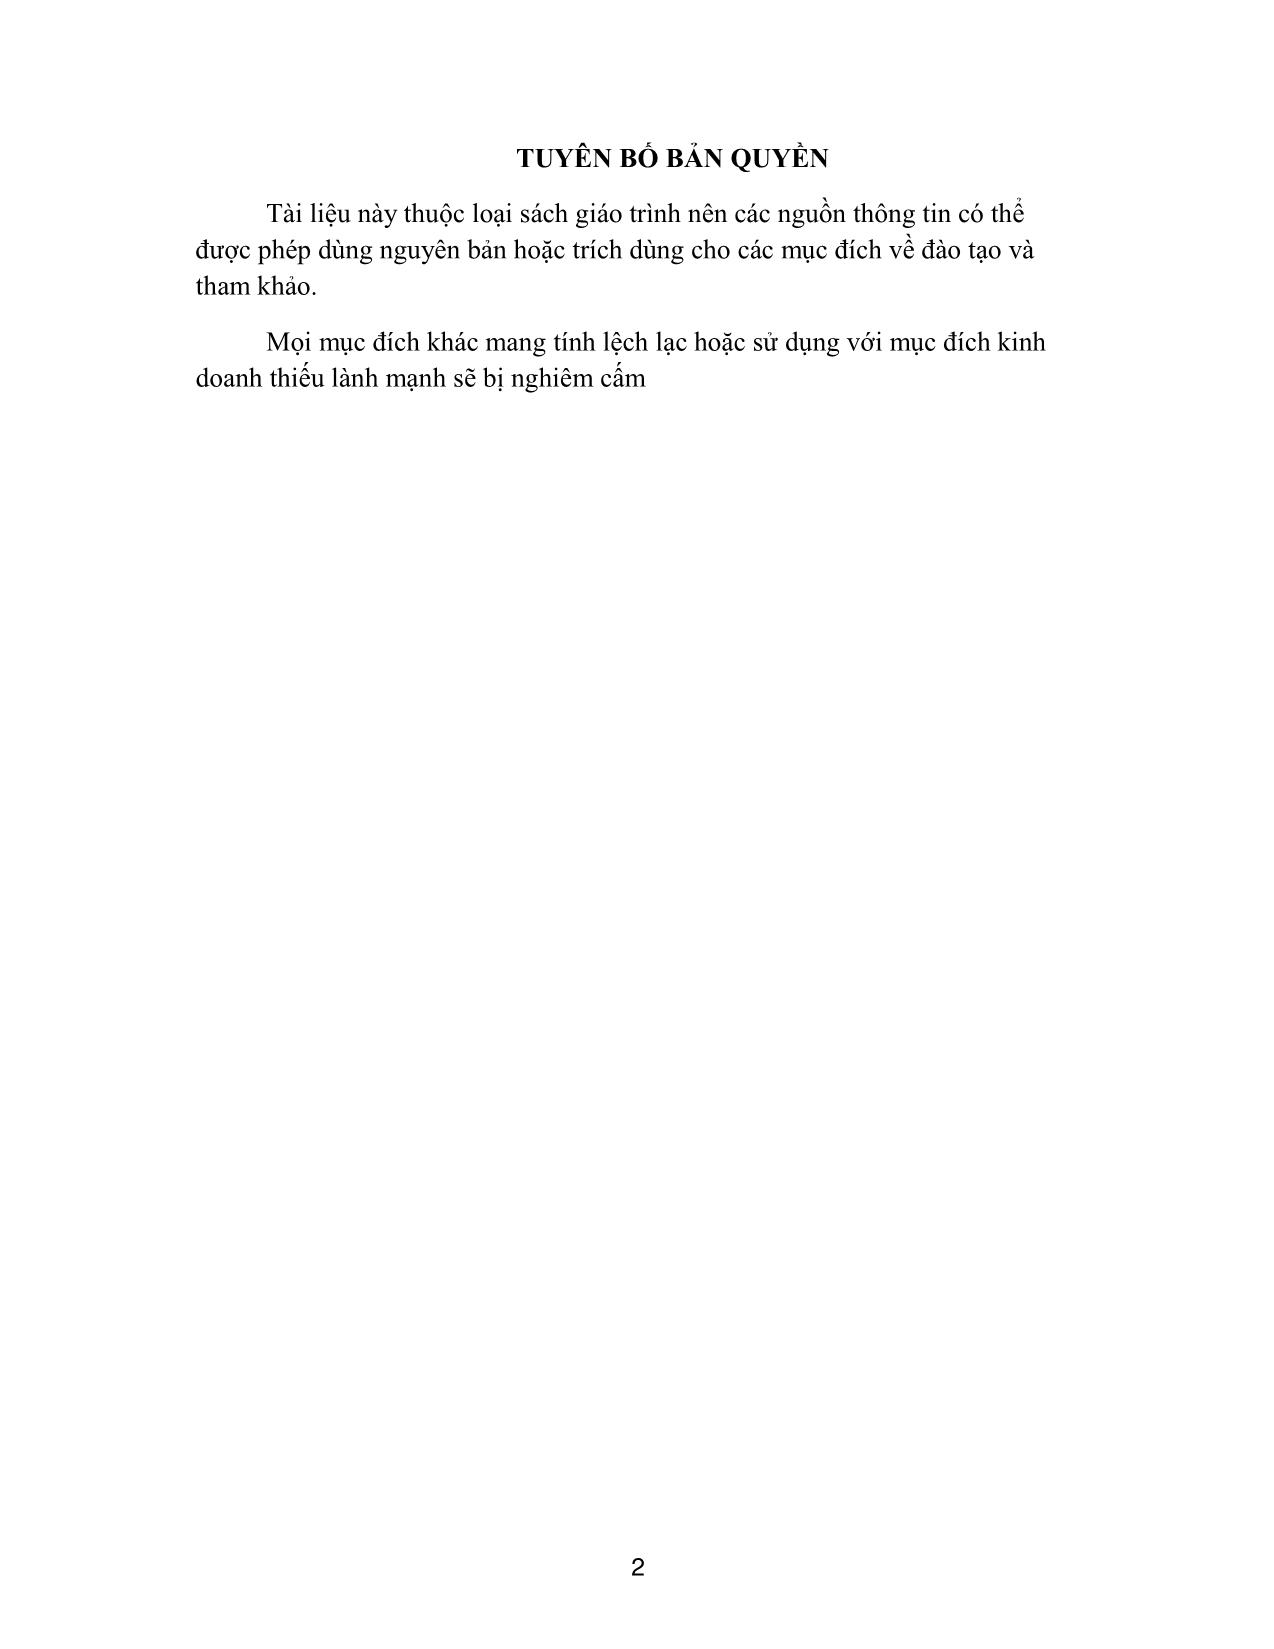 Giáo trình Thanh nhạc - Thanh nhạc 4 trang 2